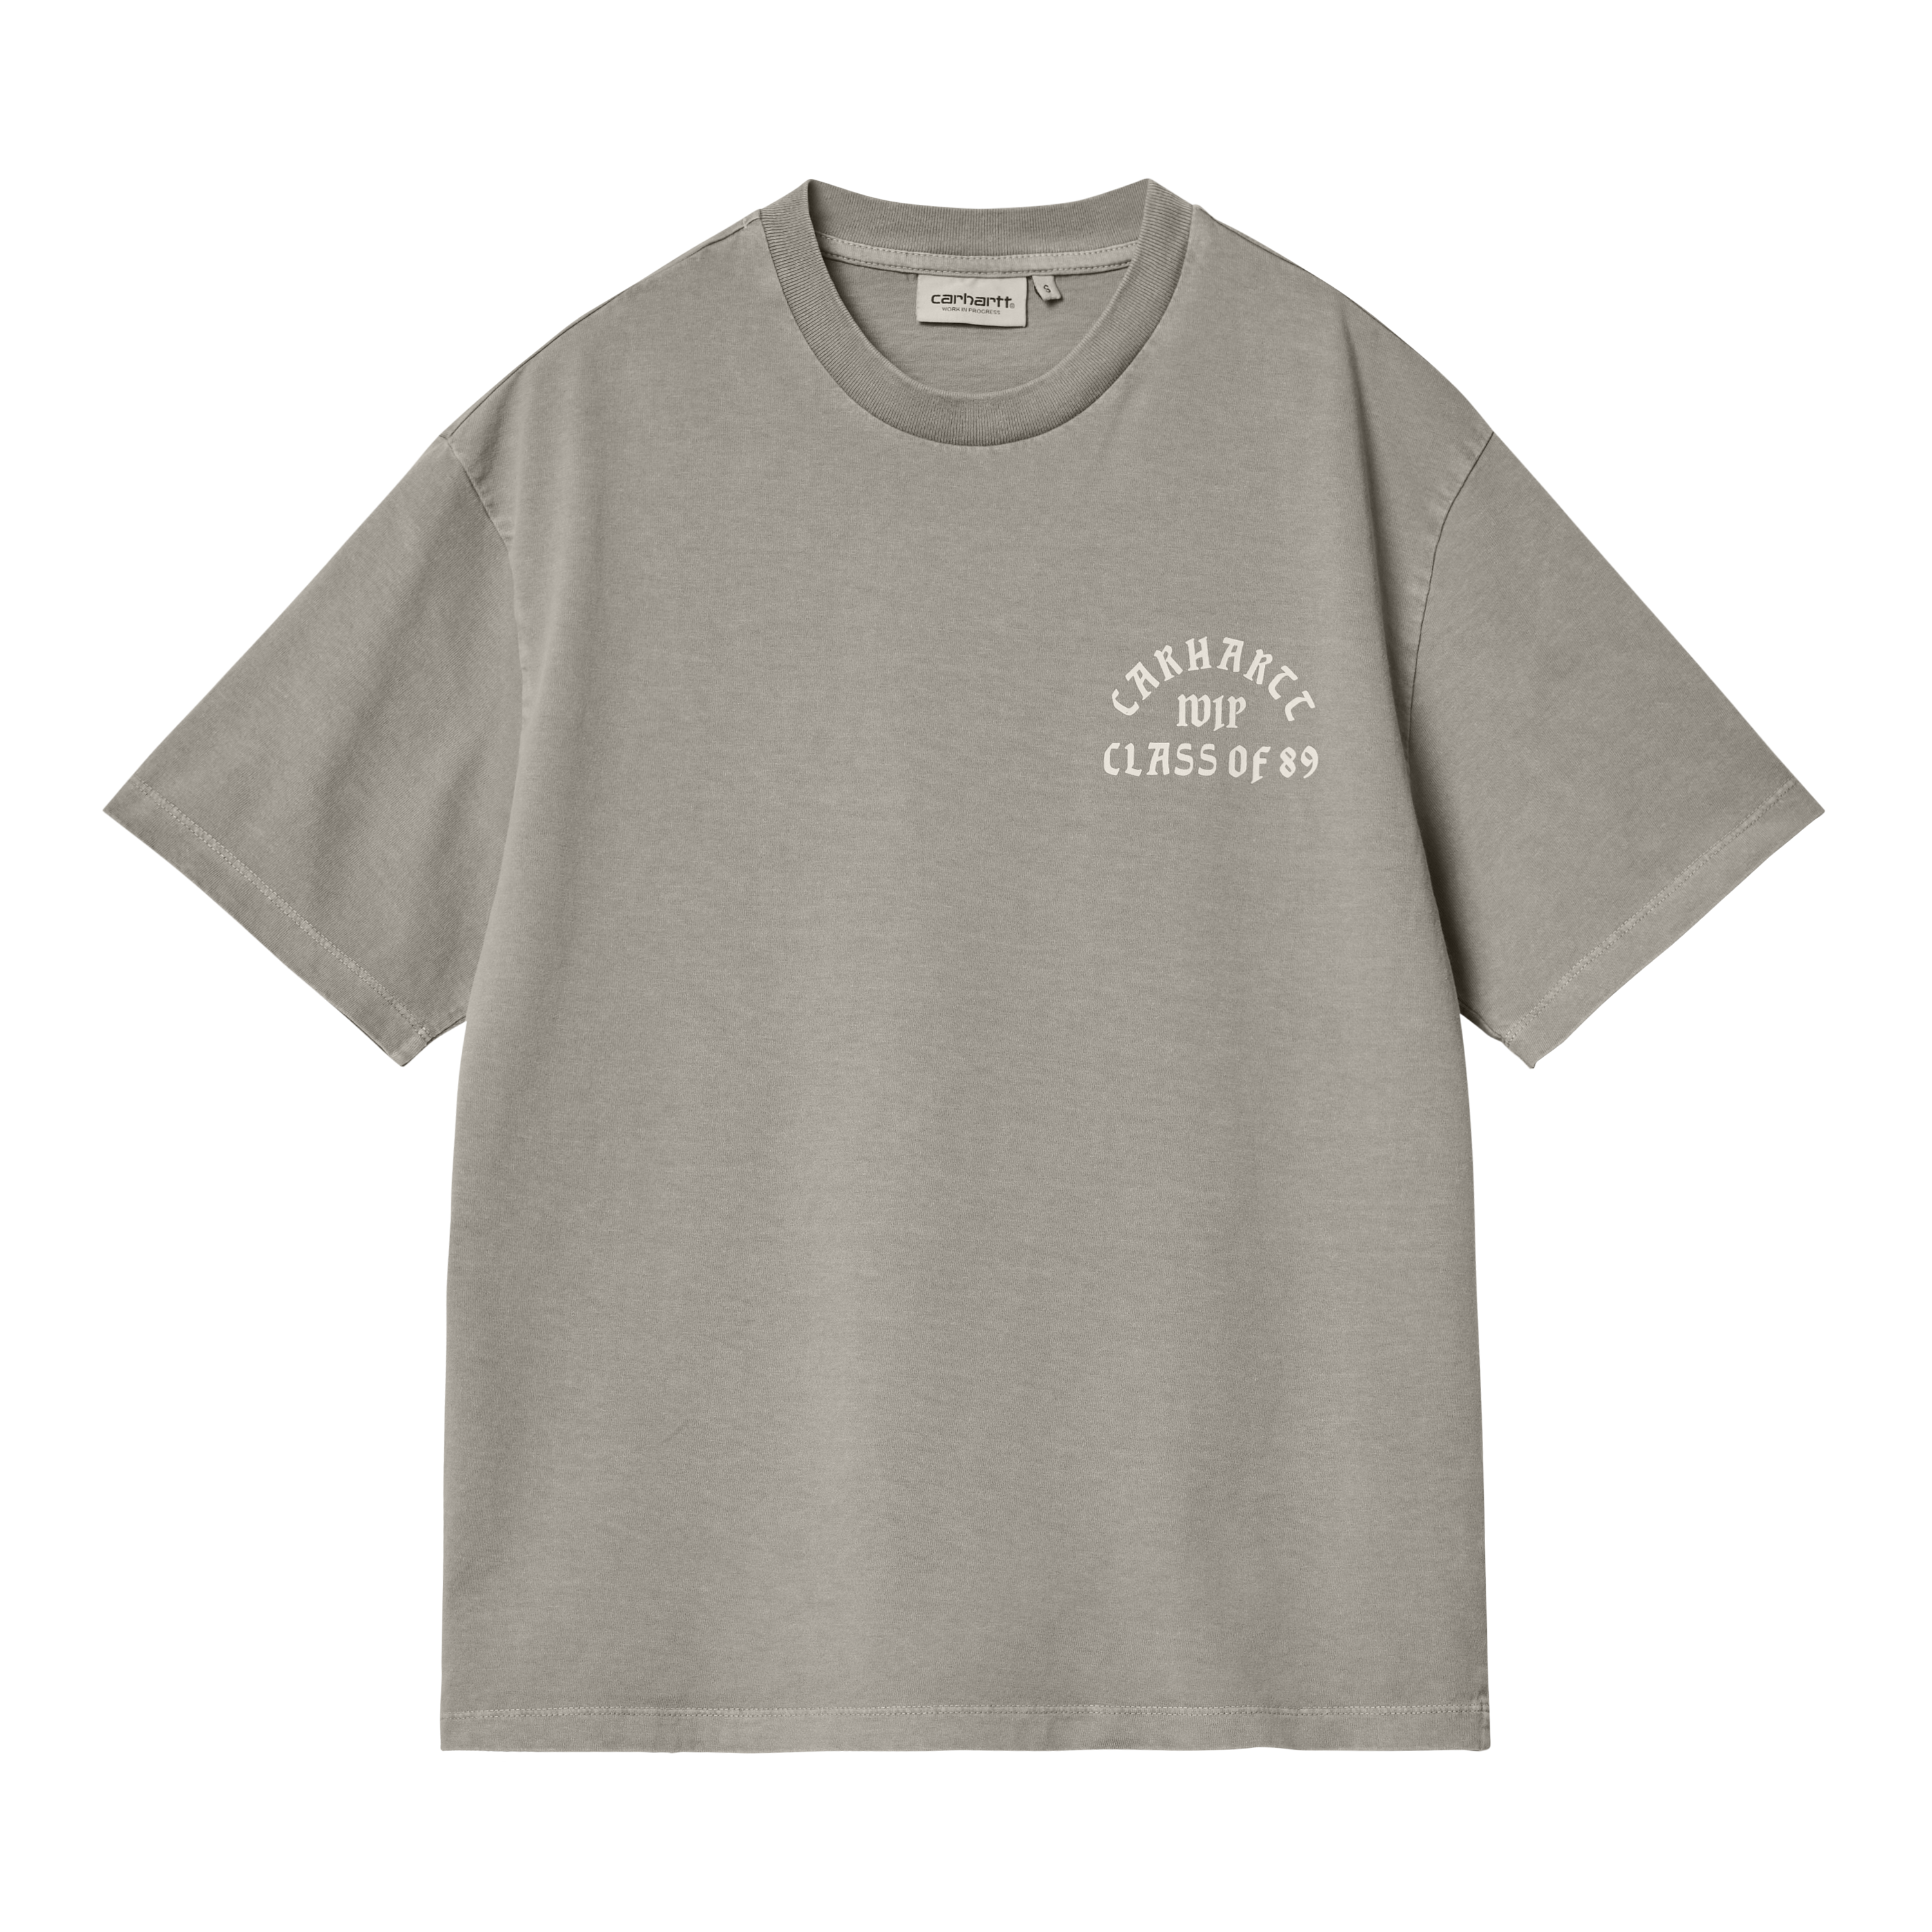 Carhartt WIP Women’s Short Sleeve Class of 89 T-Shirt Gris